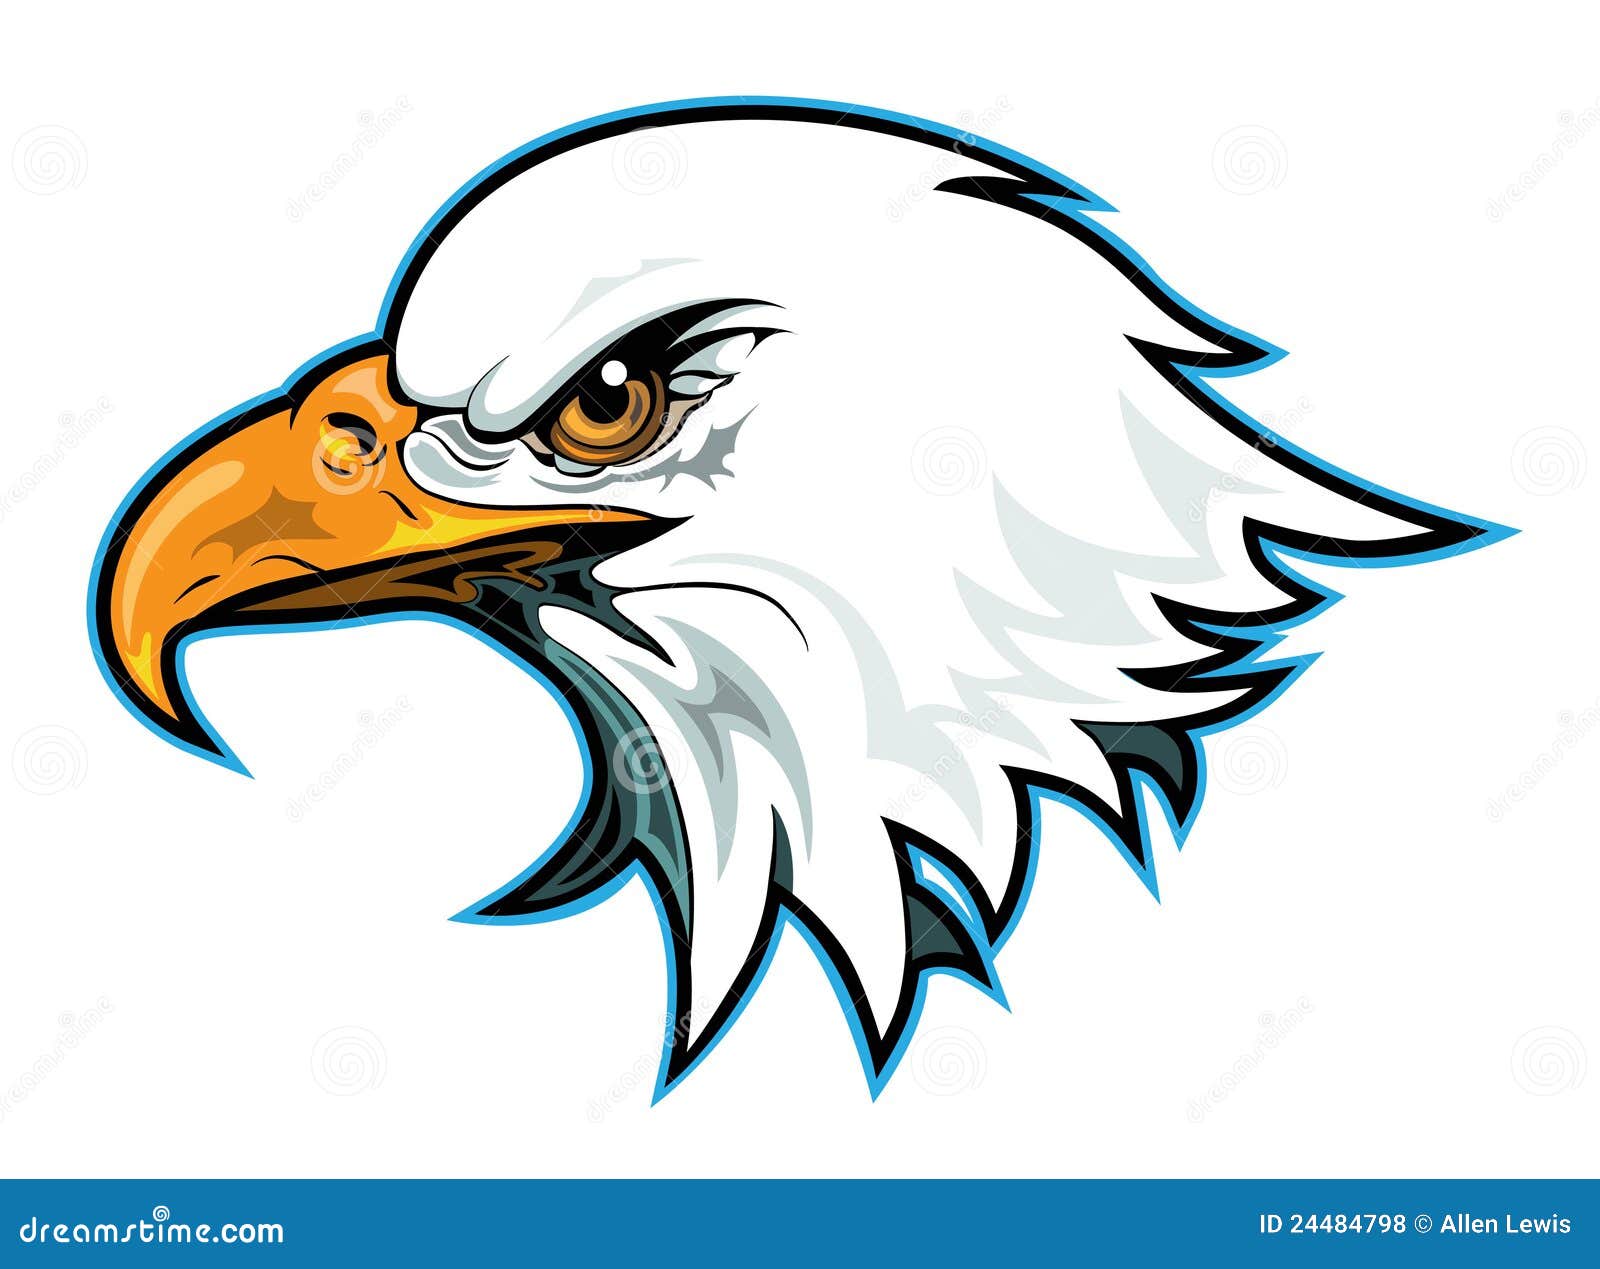 free clipart eagle head - photo #41